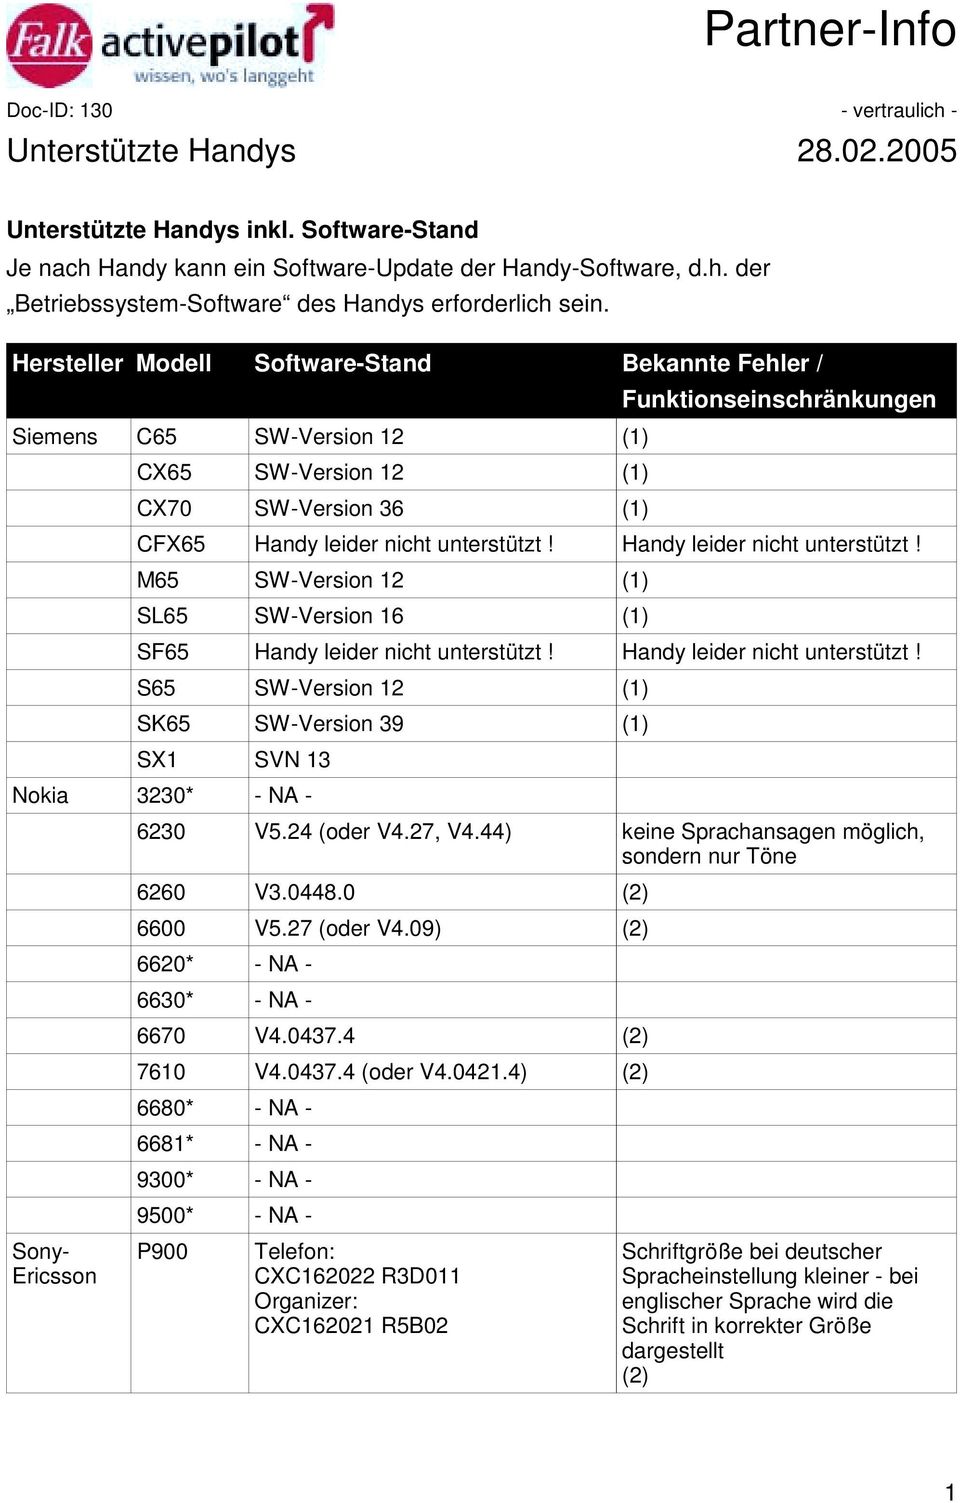 Handy leider nicht unterstützt! M65 SW-Version 12 (1) SL65 SW-Version 16 (1) SF65 Handy leider nicht unterstützt! Handy leider nicht unterstützt! S65 SW-Version 12 (1) SK65 SW-Version 39 (1) SX1 SVN 13 Nokia 3230* - NA - 6230 V5.